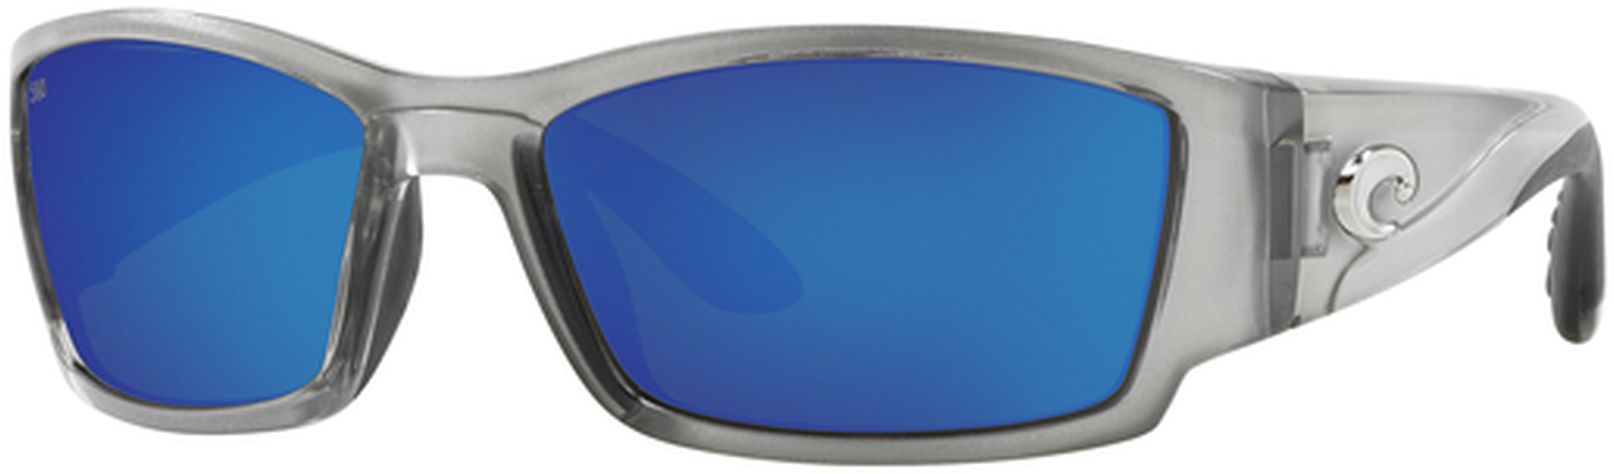 Photos - Sunglasses Costa Del Mar Men's Corbina Polarized 580G  | Father's Day Gift 